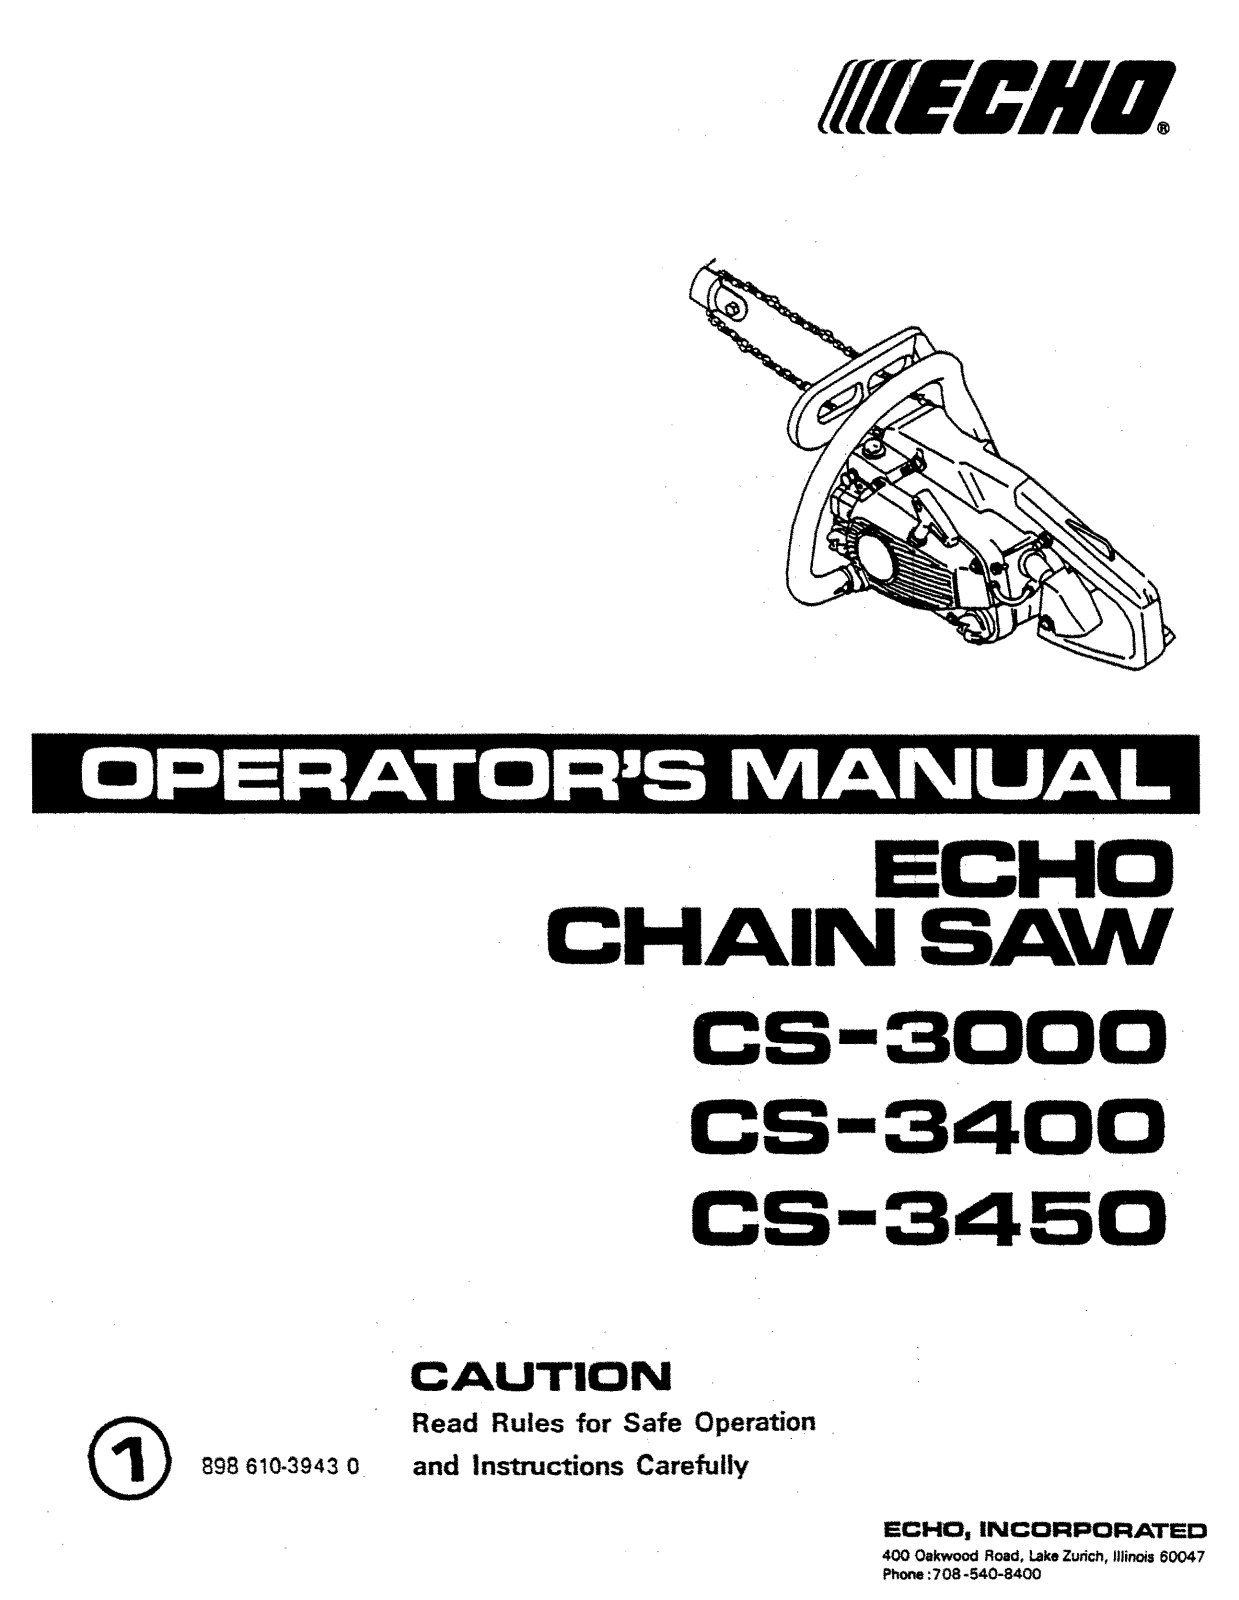 Echo CS-3000, CS-3450, CS-3400 Manual